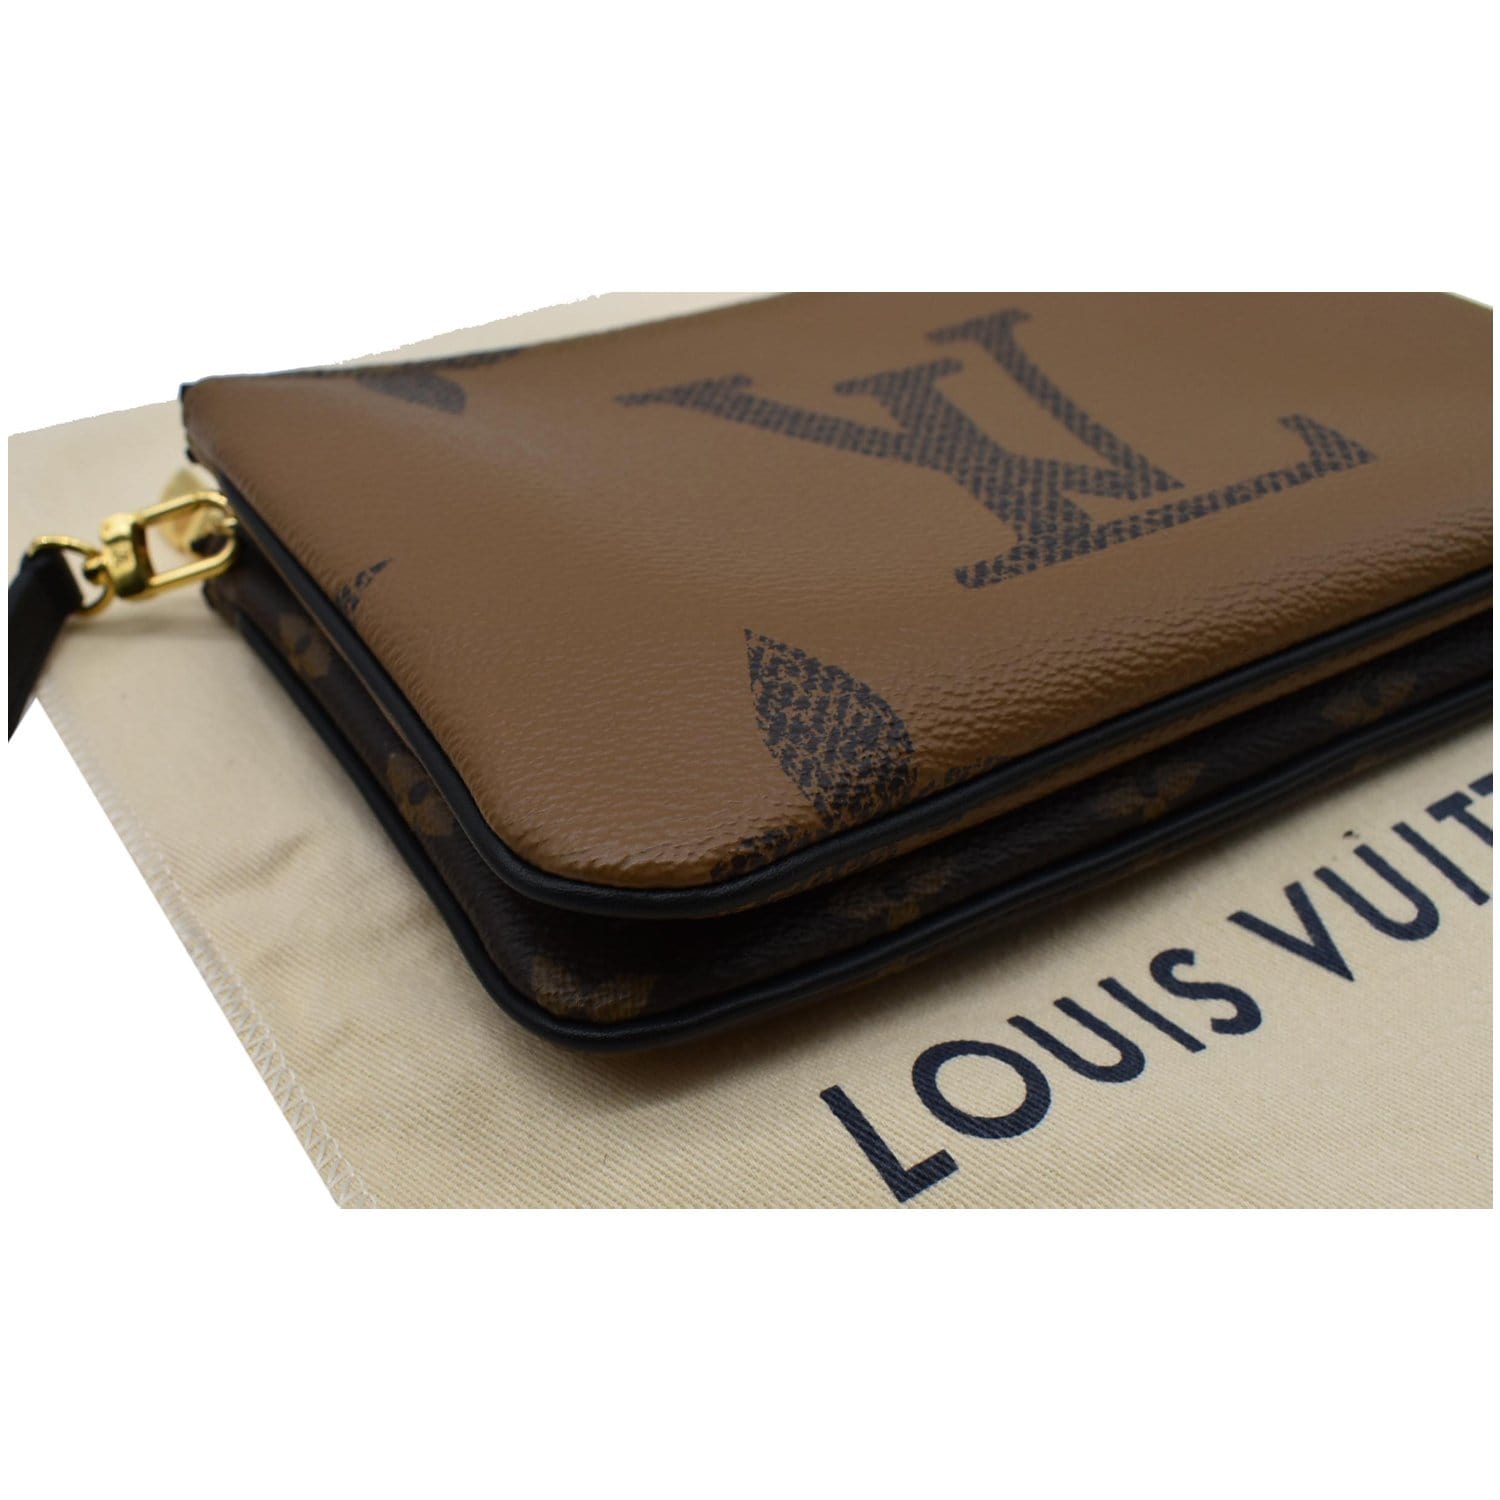 Louis Vuitton Giant Monogram Canvas Double Zip Pochette, Louis Vuitton  Handbags